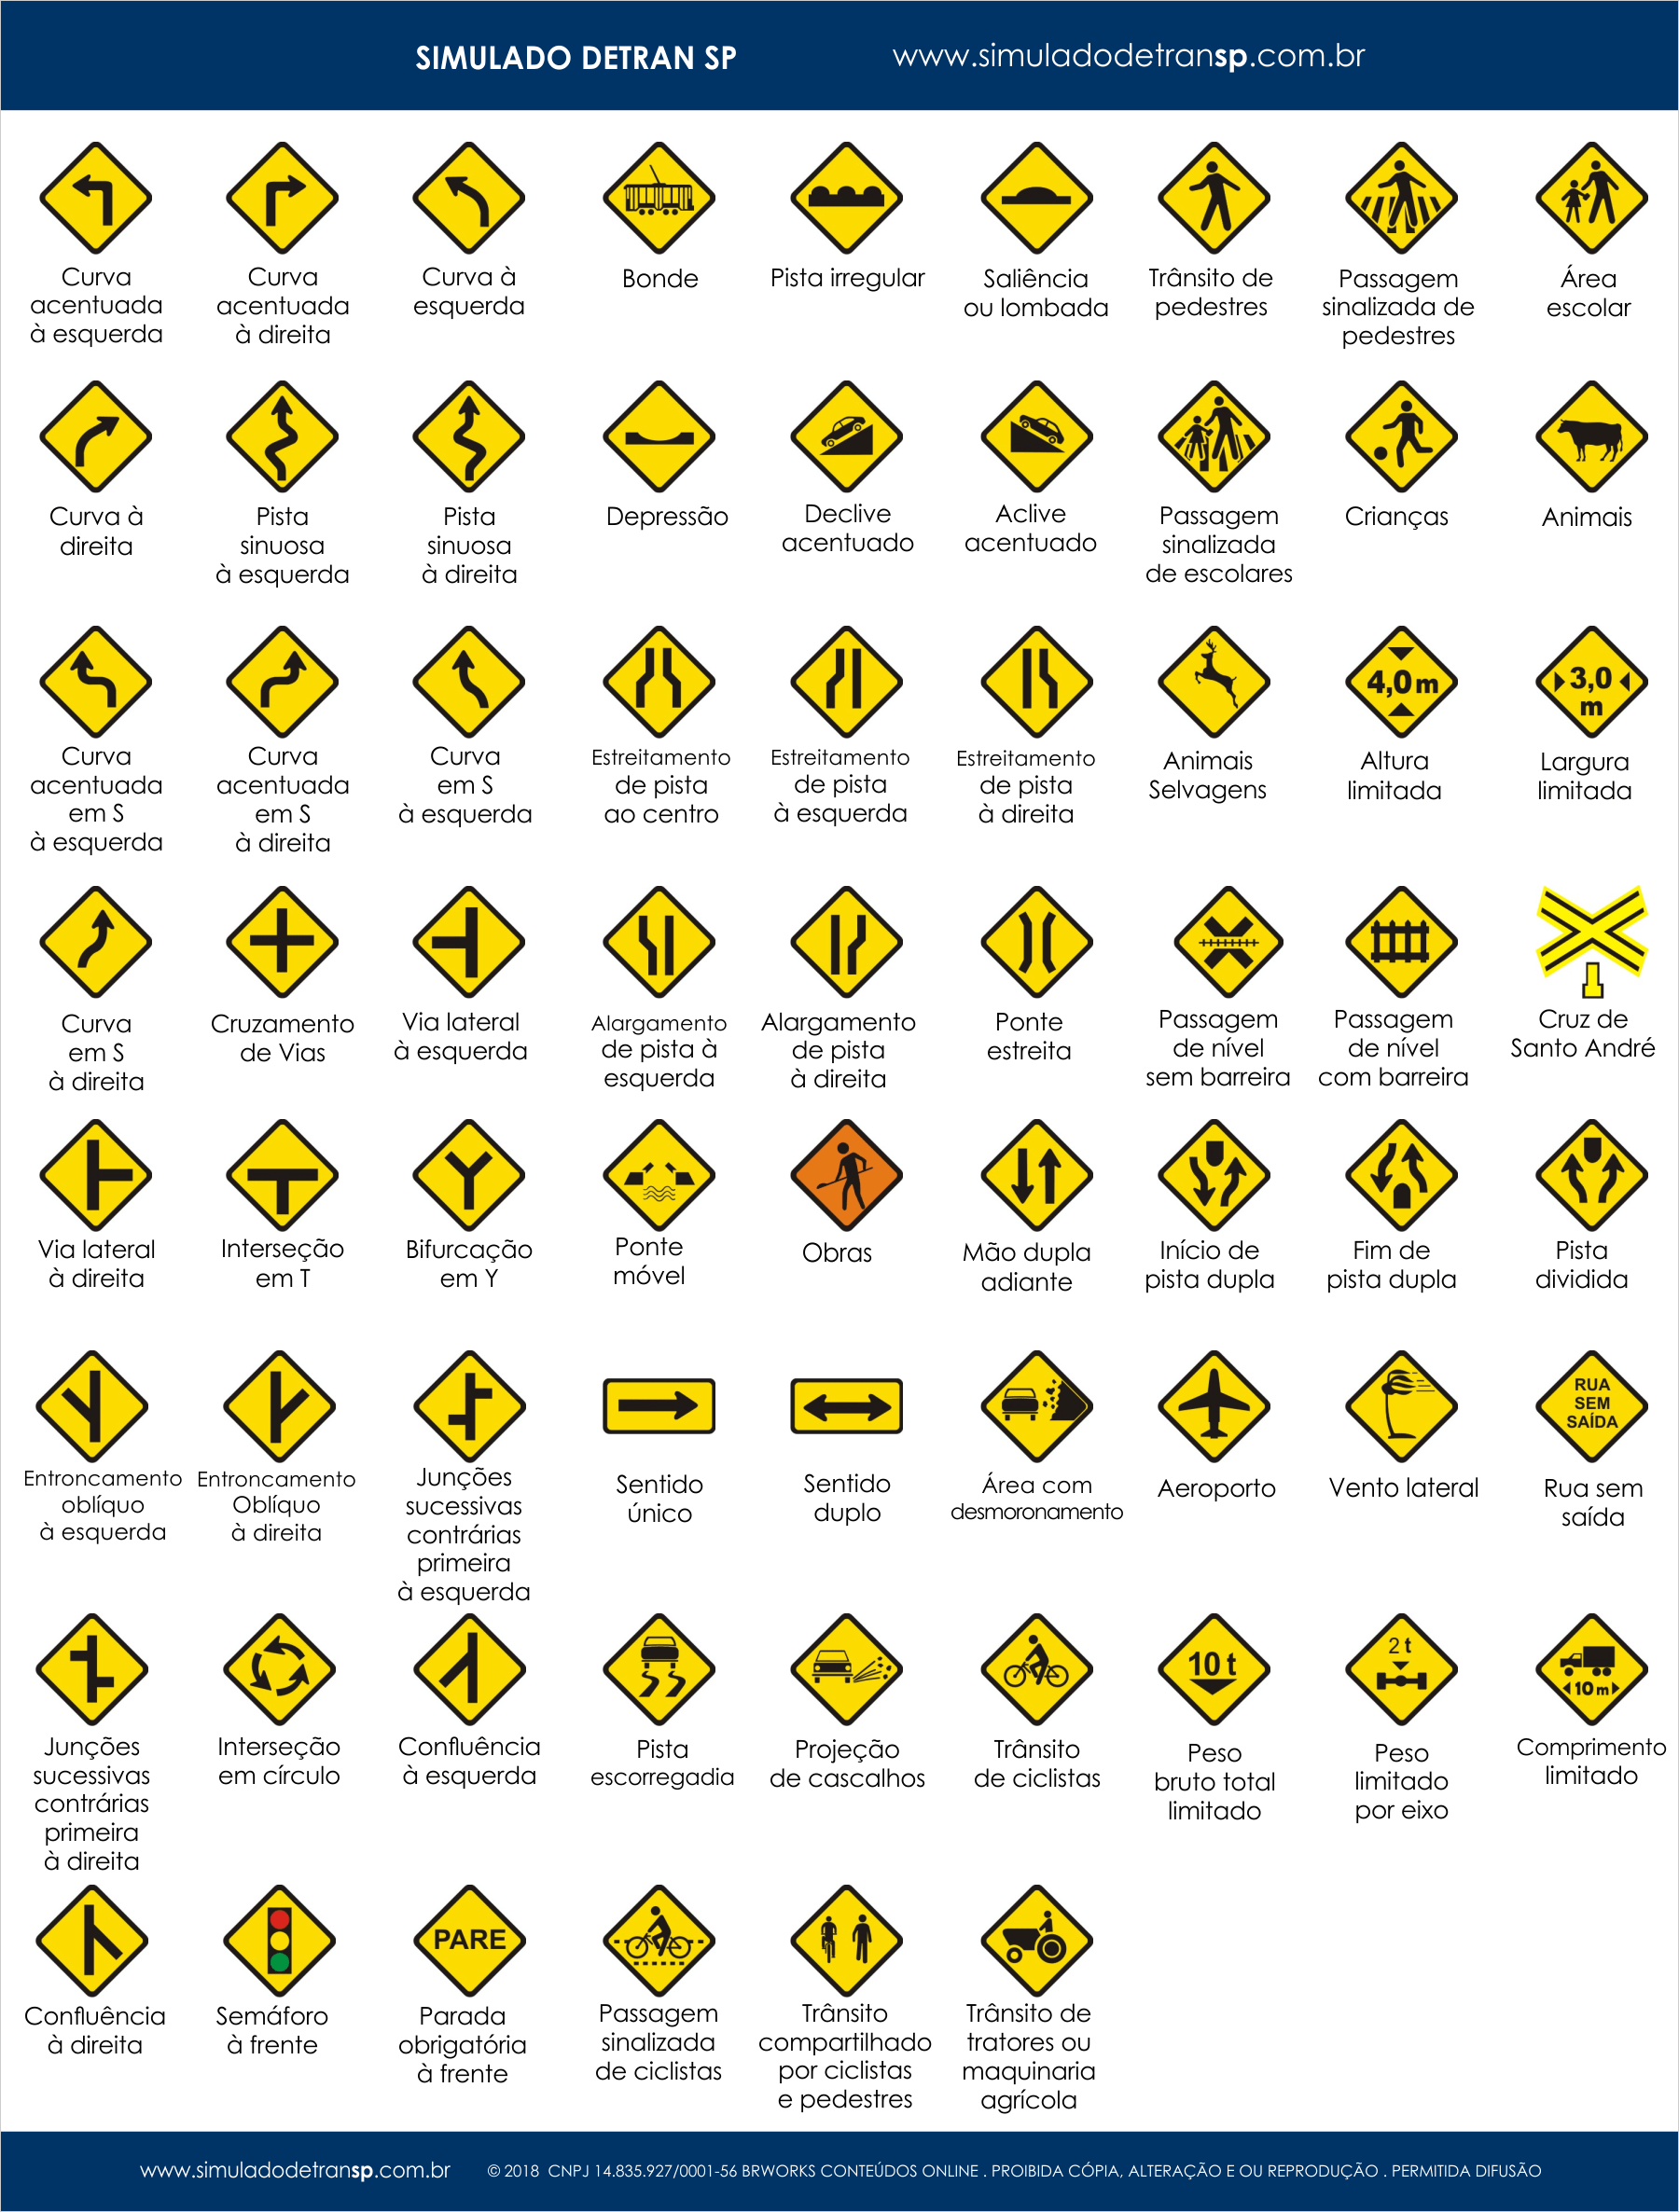 Placas de trânsito - placas de advertência - Simulado Detran SP 2019